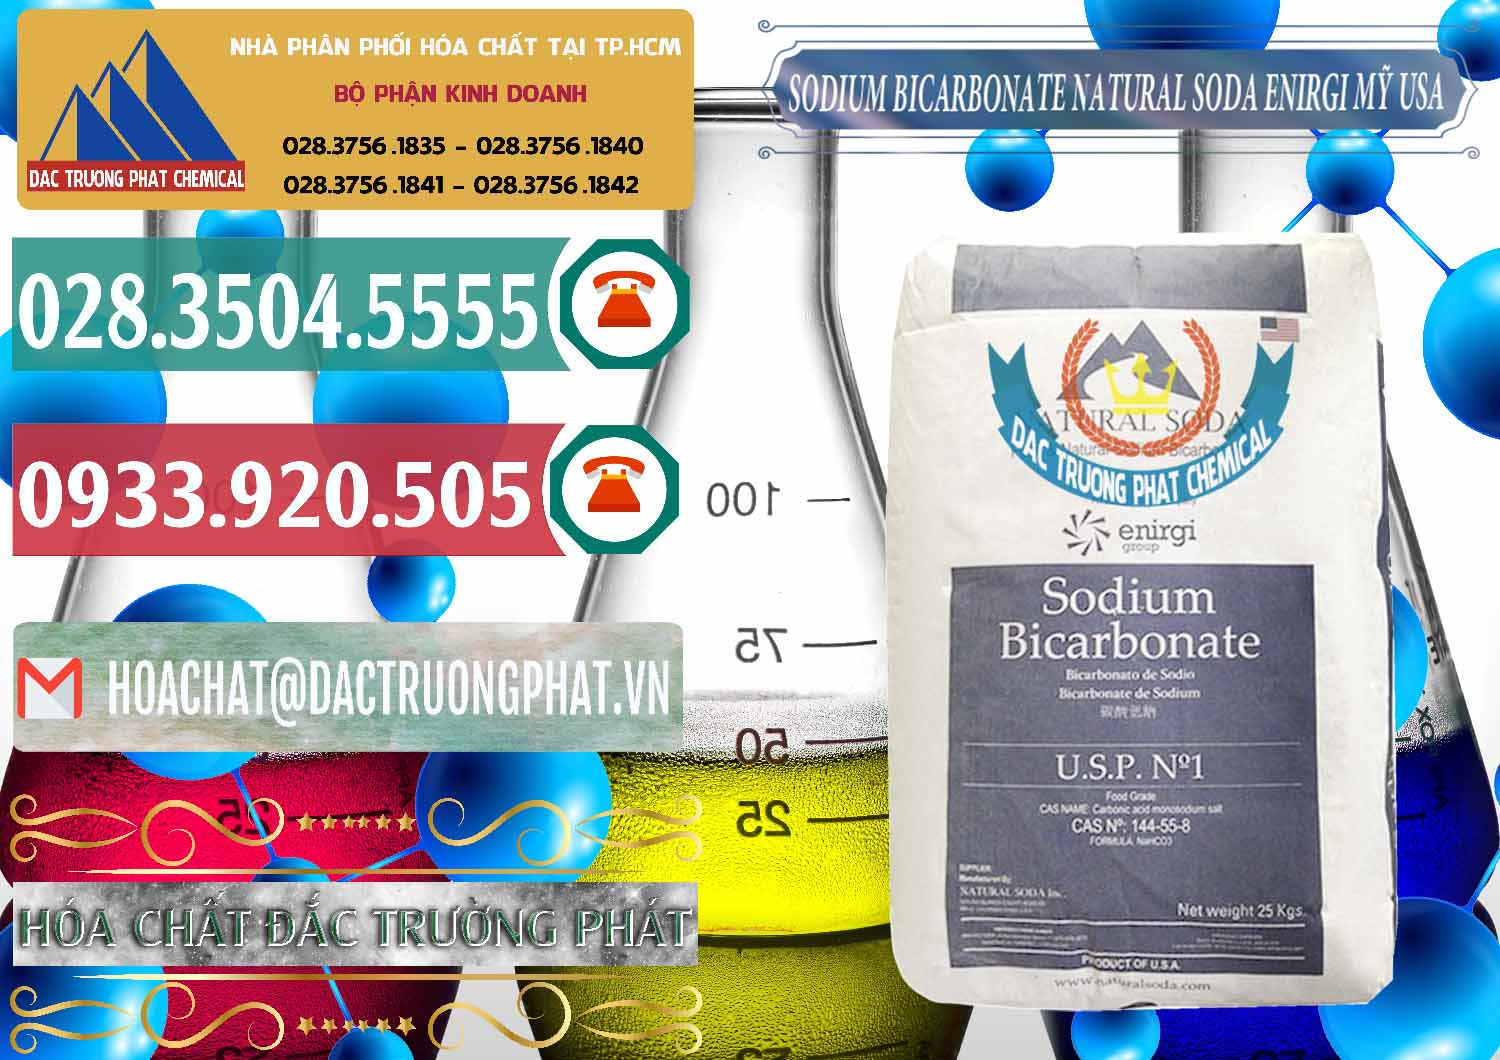 Cung cấp và bán Sodium Bicarbonate – Bicar NaHCO3 Food Grade Natural Soda Enirgi Mỹ USA - 0257 - Cung cấp ( bán ) hóa chất tại TP.HCM - muabanhoachat.vn